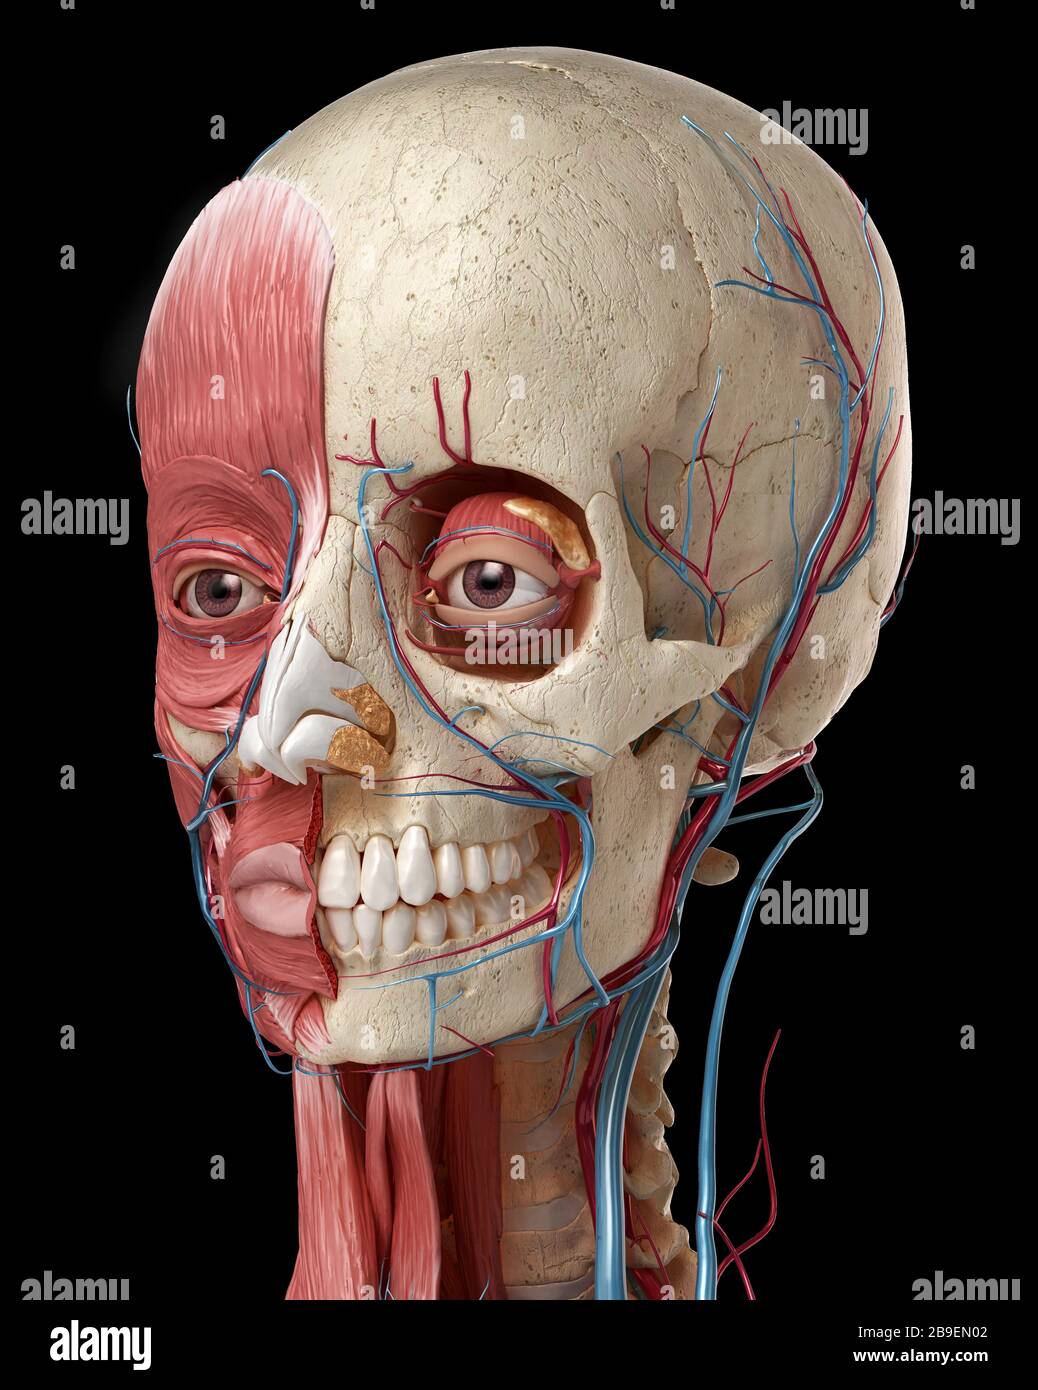 Anatomie humaine de la tête avec crâne, ampoules oculaires, vaisseaux sanguins et muscles, fond noir. Banque D'Images